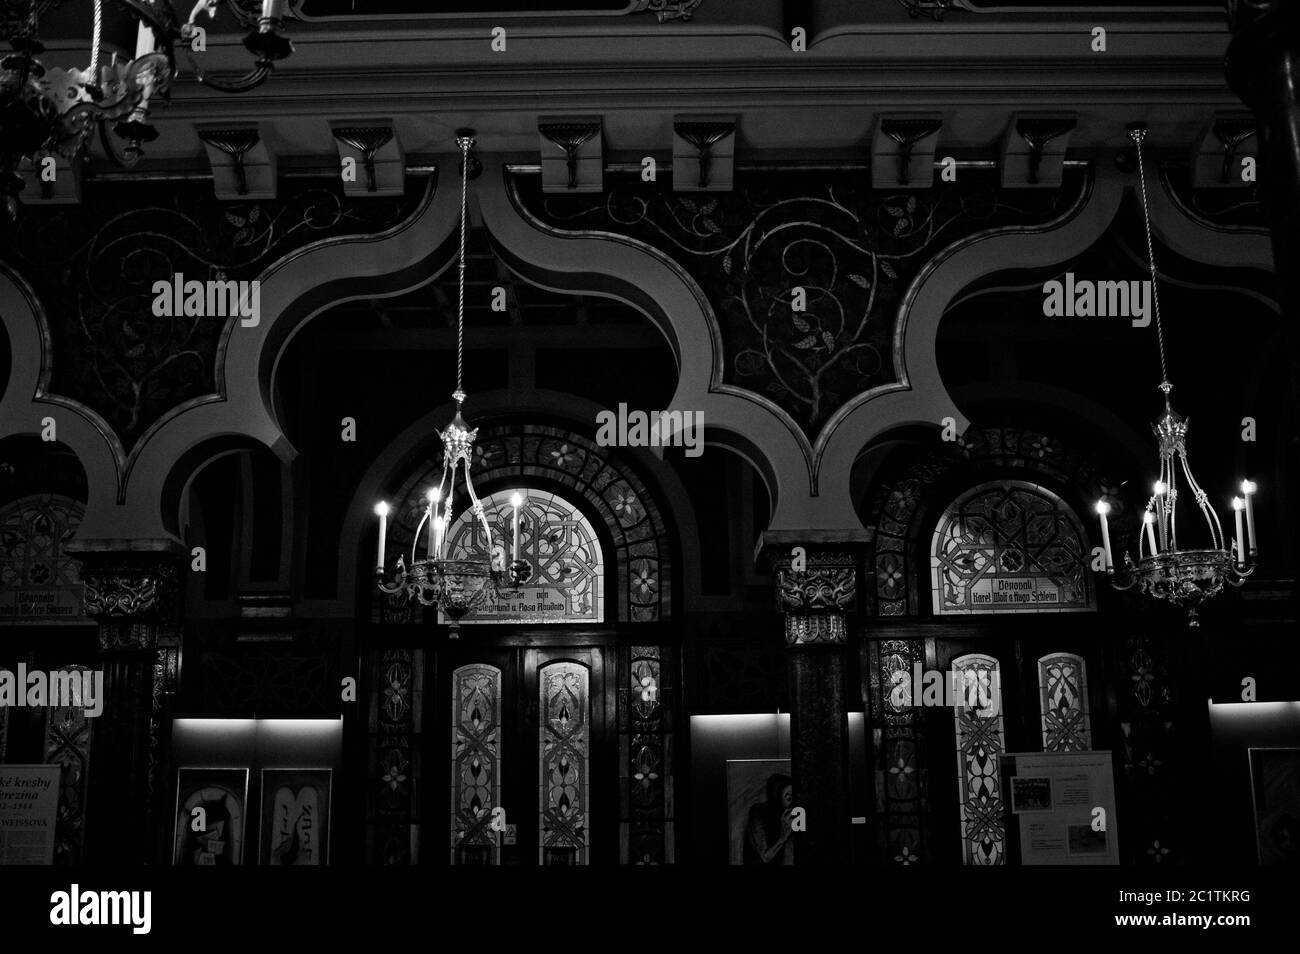 Praga, Repubblica Ceca - 30 dicembre 2019: Interno della sinagoga Jeruzalémská che ha uno stile moresco con molti castighi, archi orientali, golde Foto Stock